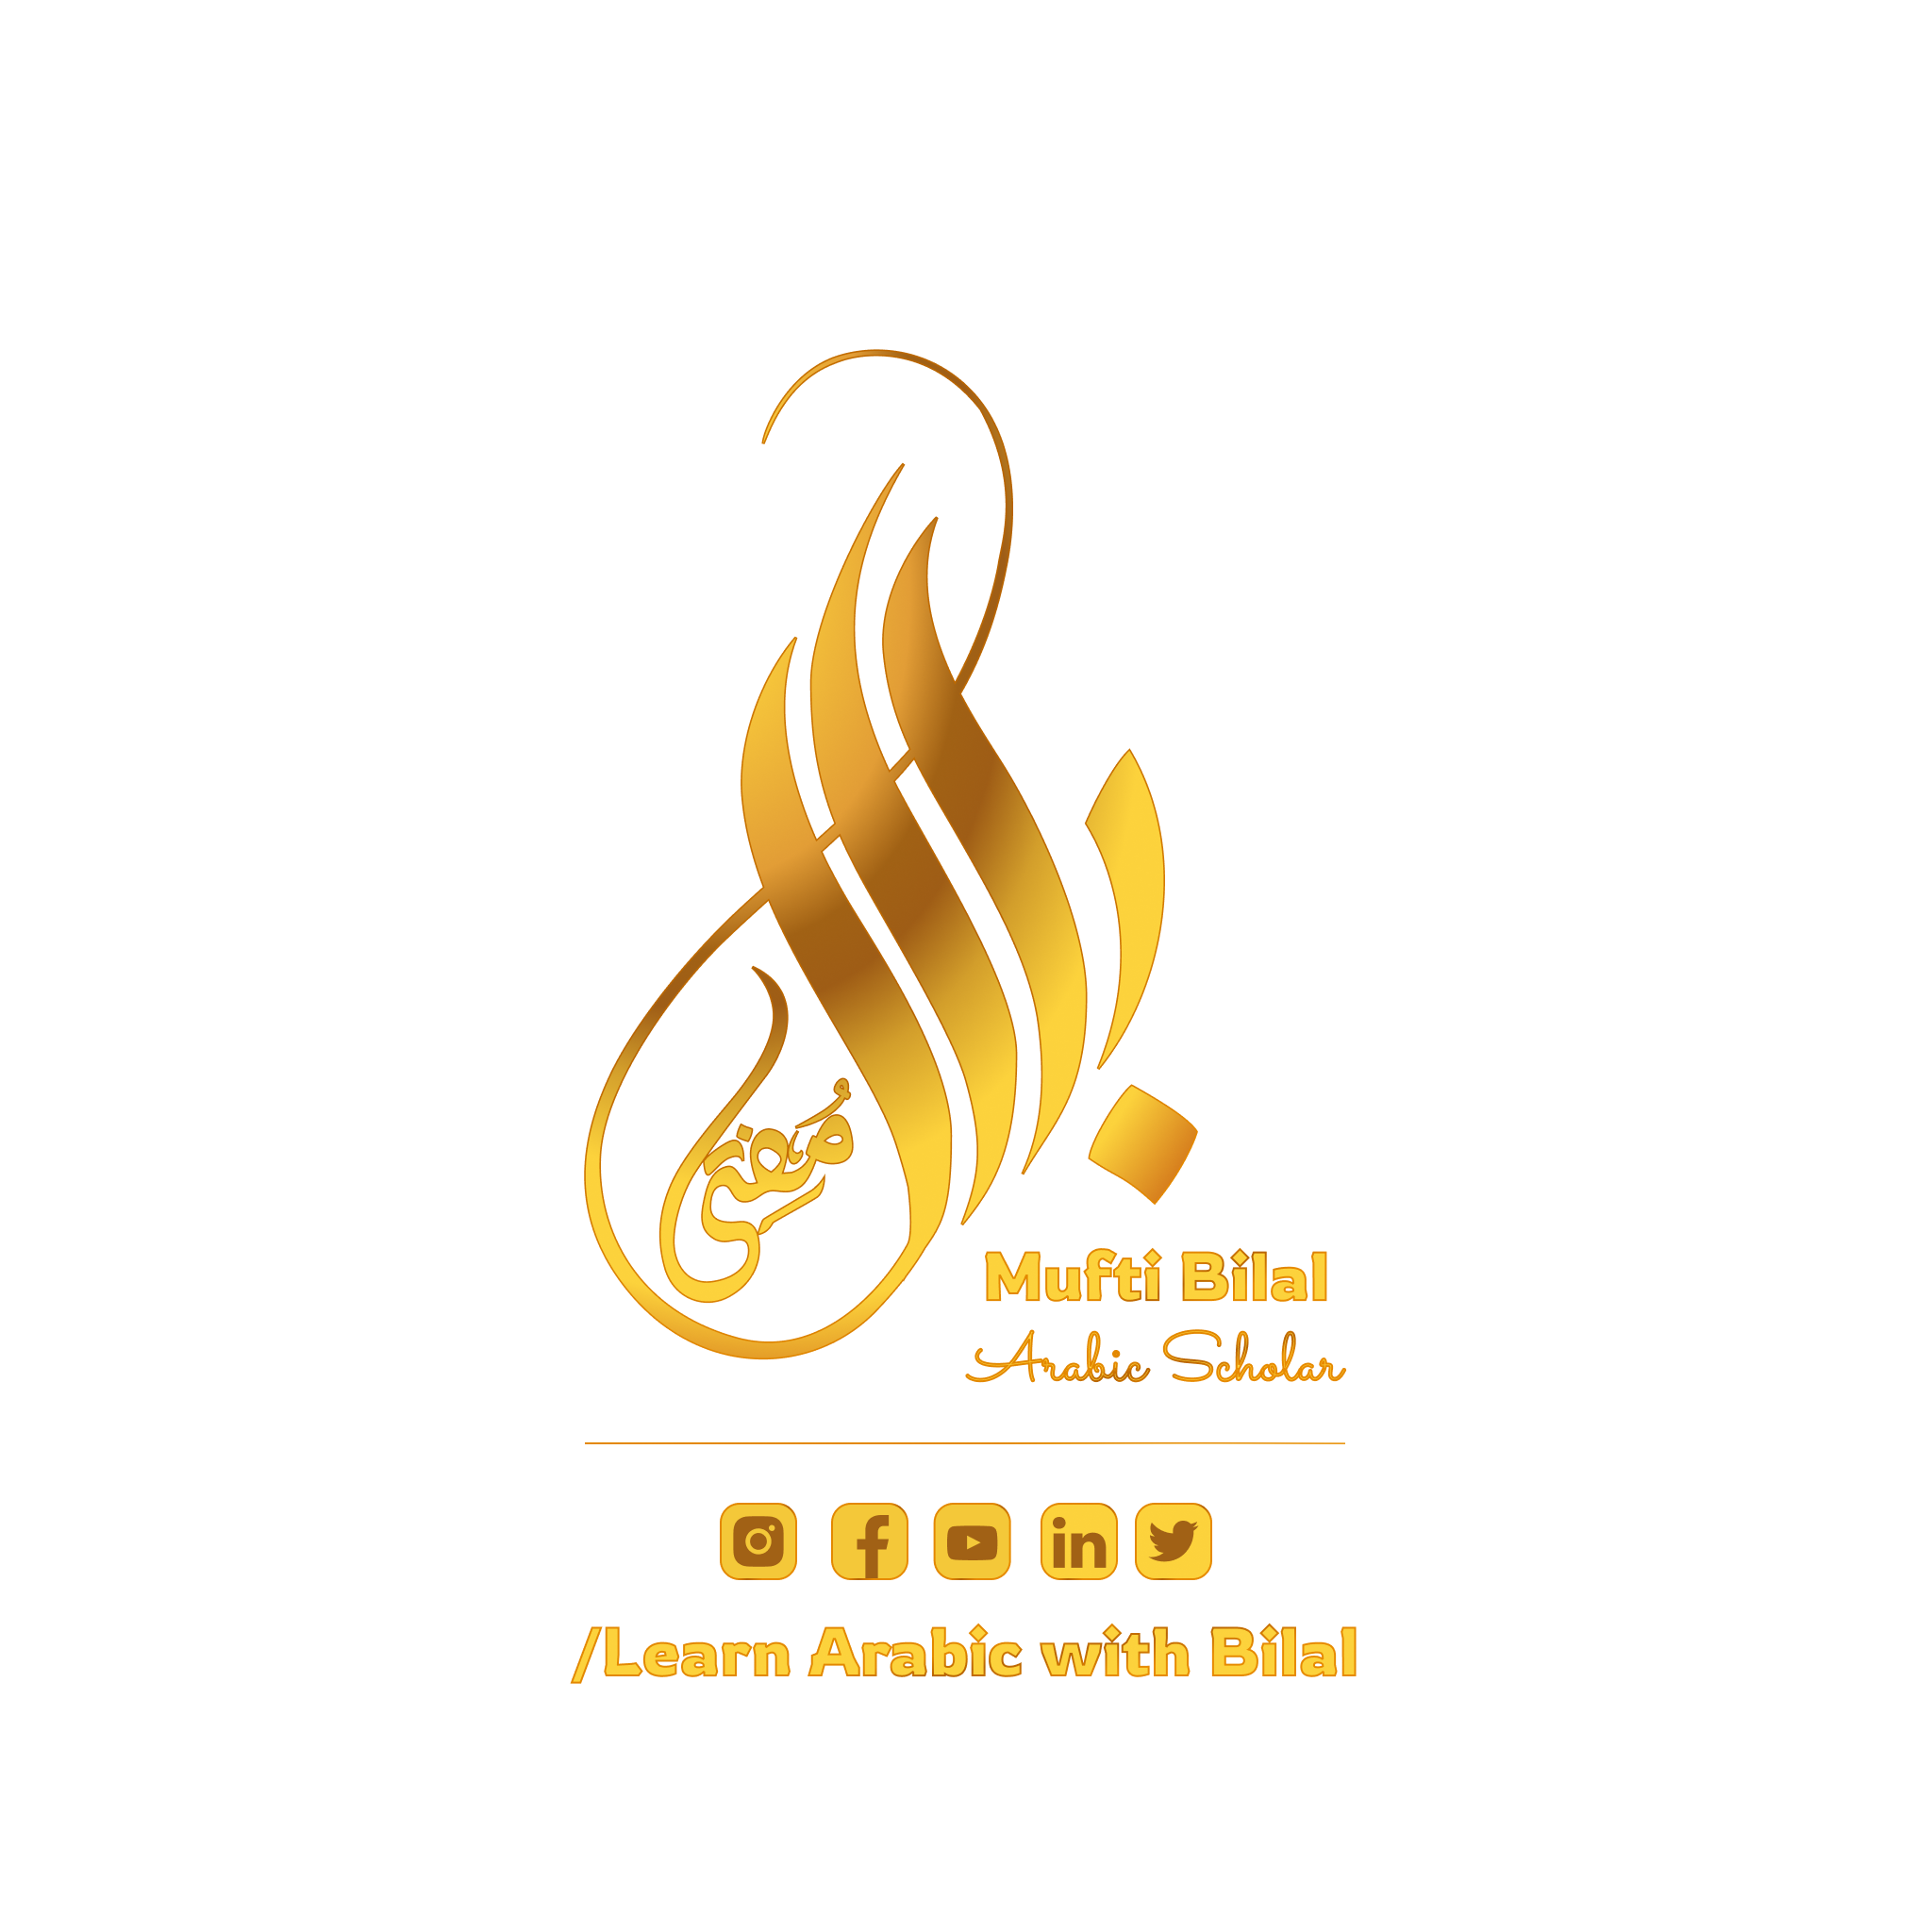 Mufti Bilal's Academy Logo